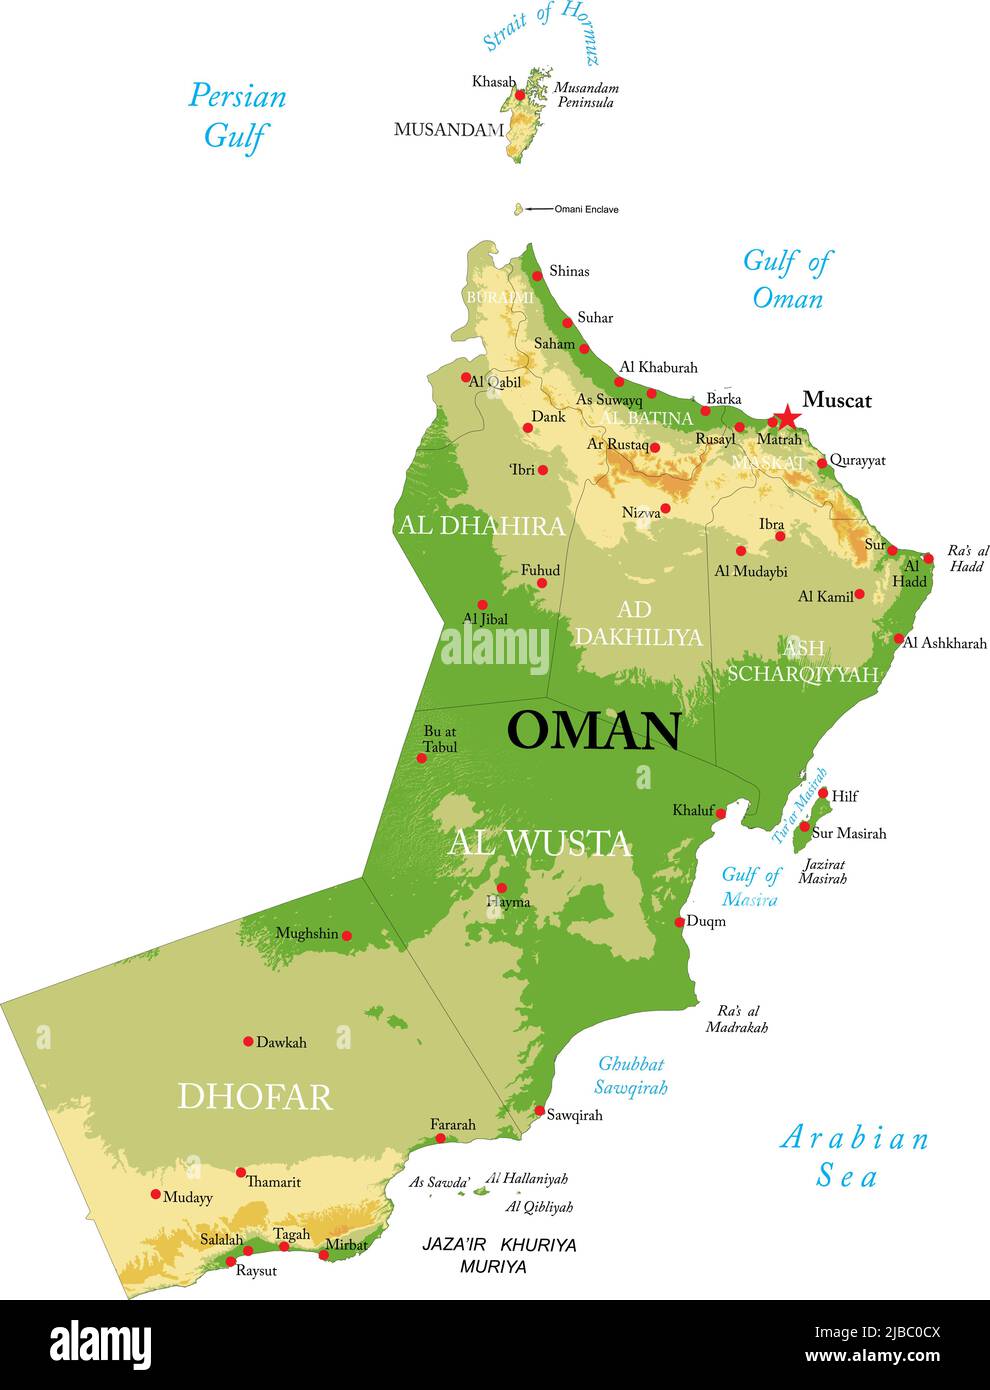 Hochdetaillierte physische Karte von Oman im Vektorformat, mit allen Reliefformen, Regionen und großen Städten. Stock Vektor